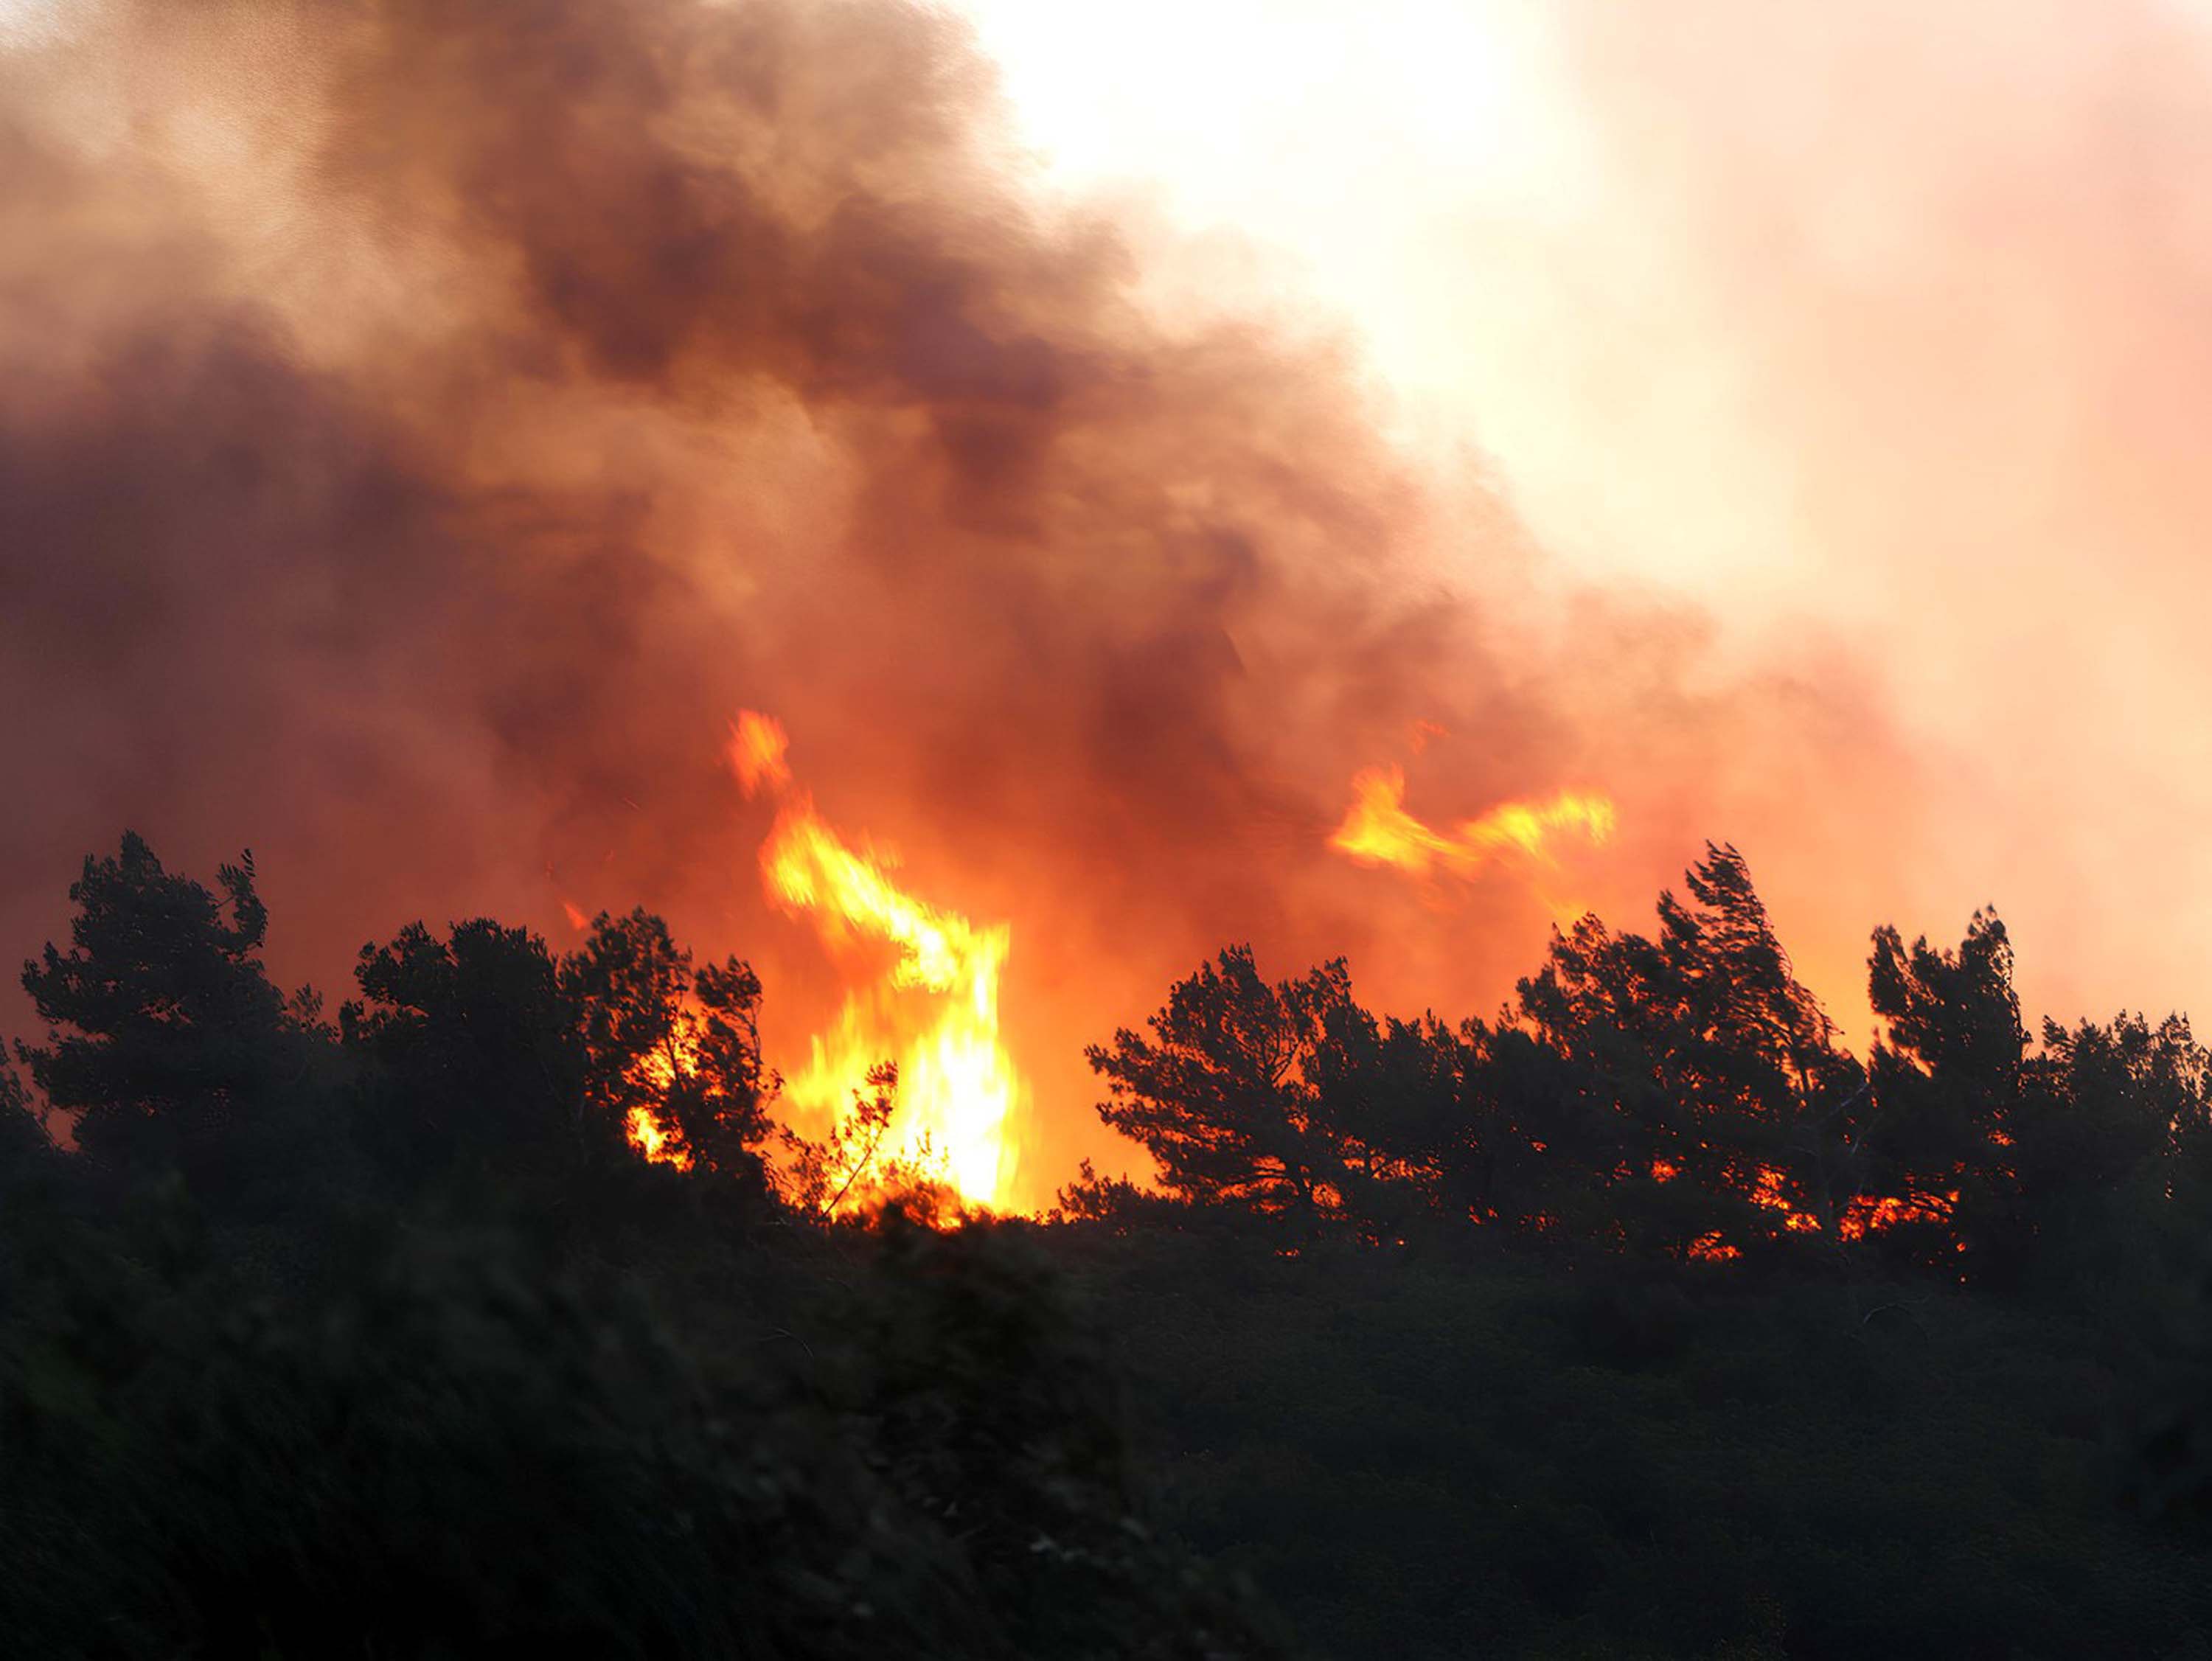 33,5 saatte kontrol altına alınmıştı: Manisa'daki yangının bilançosu ortaya çıktı